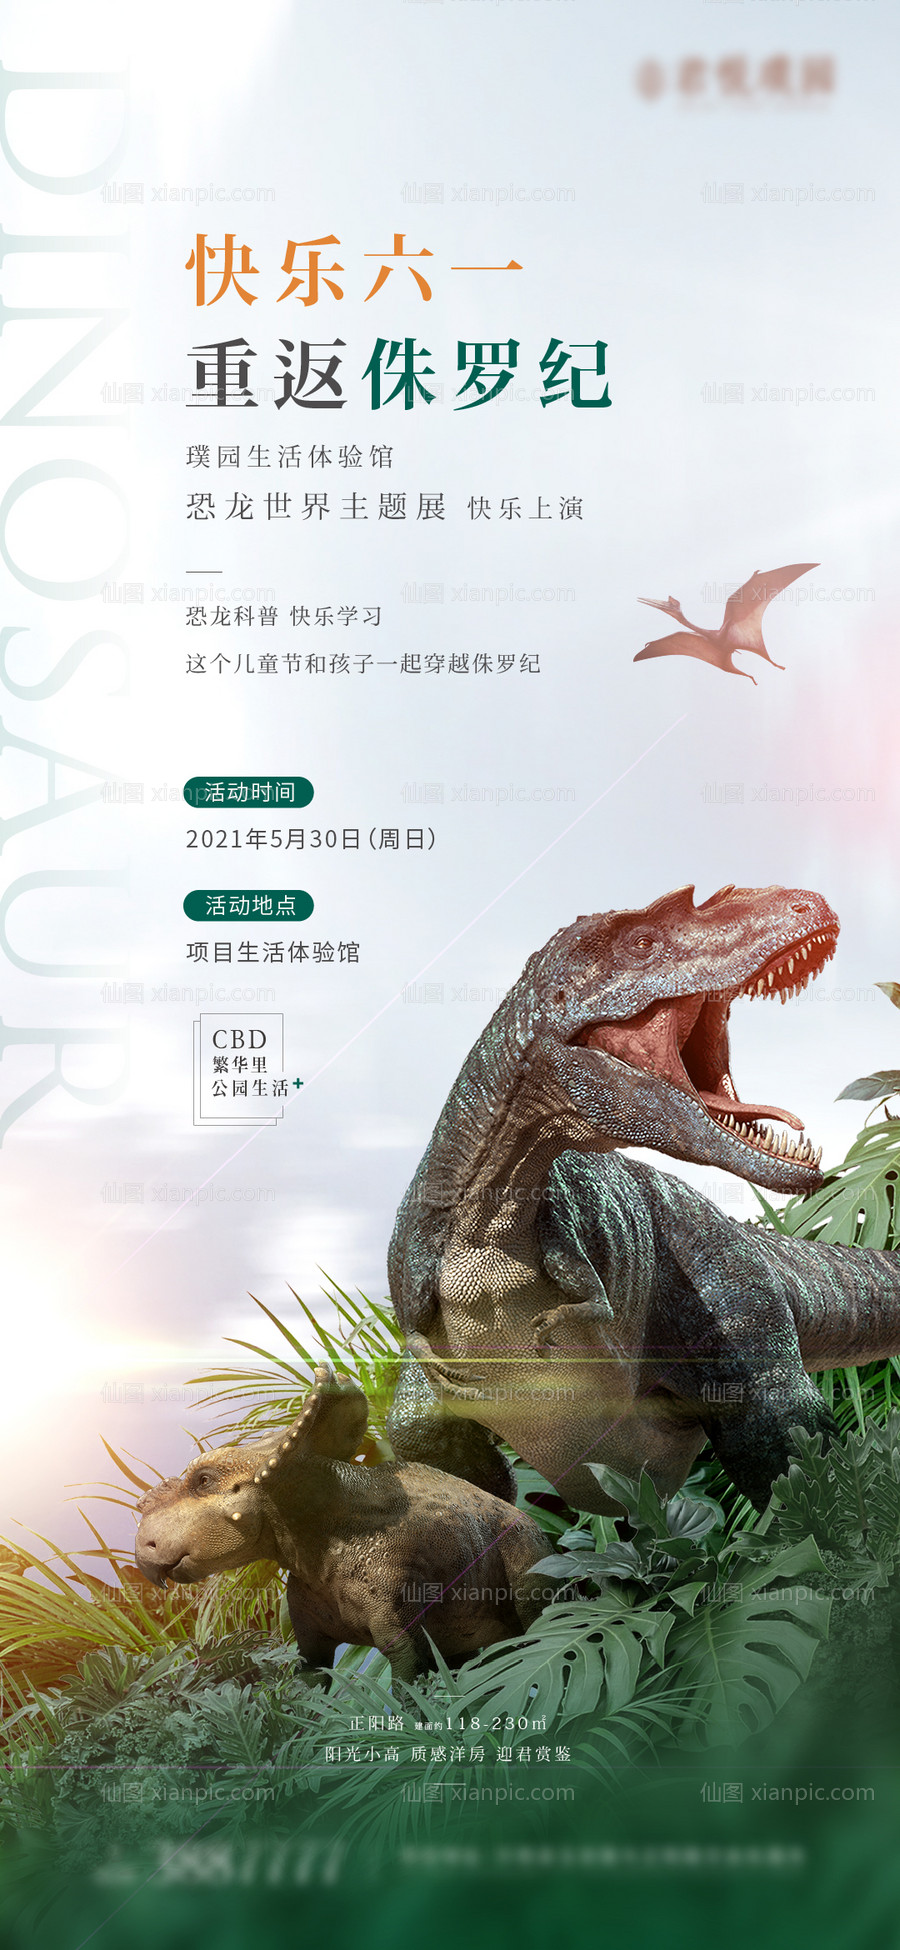 素材乐-侏罗纪恐龙展海报